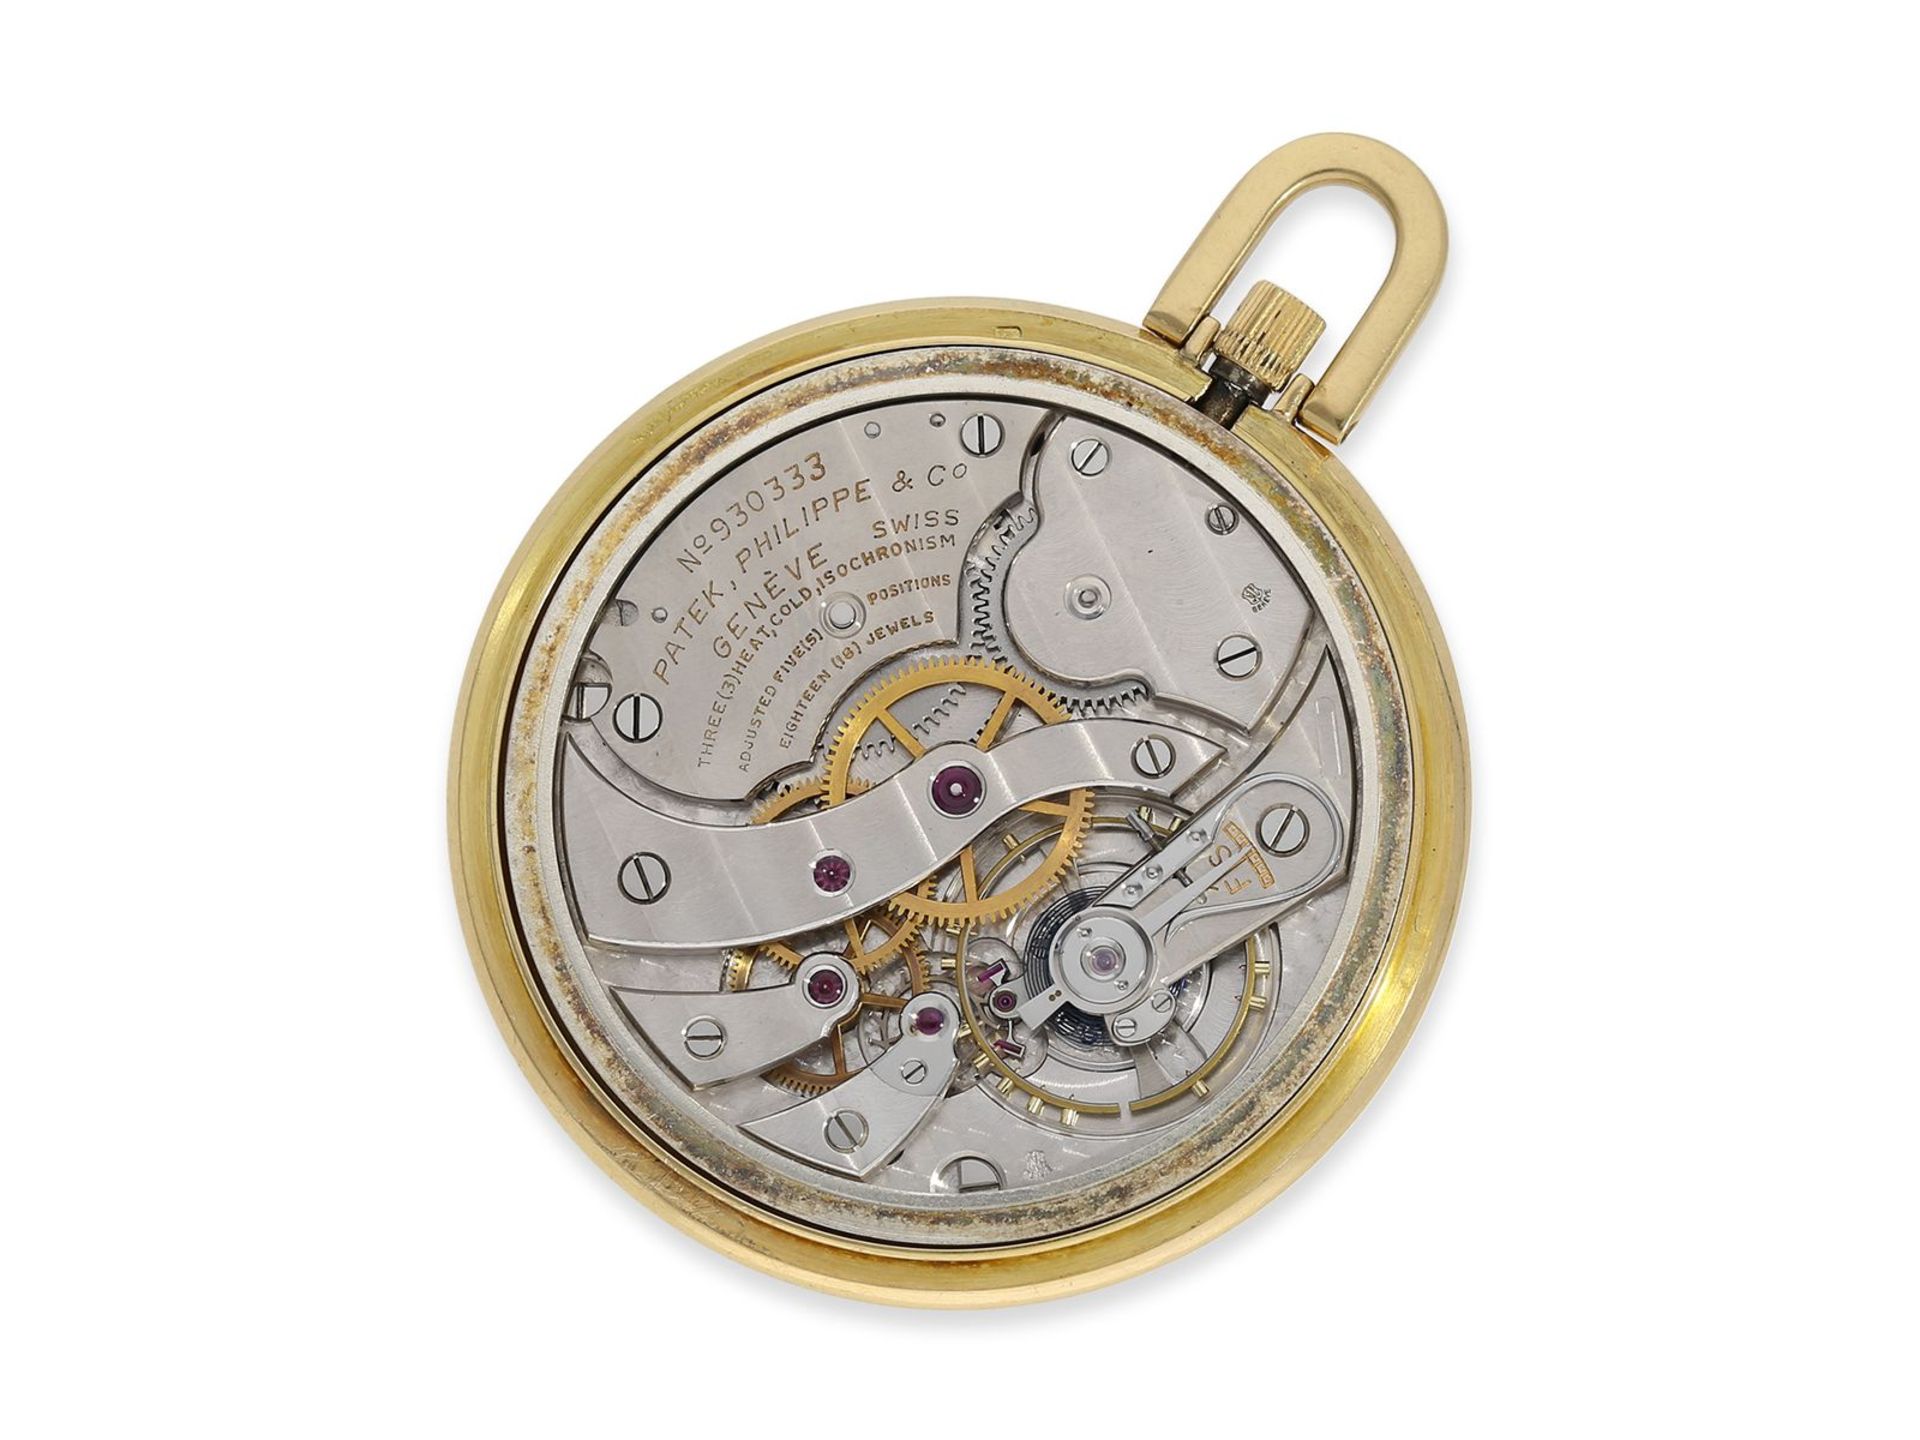 Taschenuhr: extrem seltene Patek Philippe Frackuhr in der Qualität Ankerchronometer "Extra", Genf - Image 2 of 5